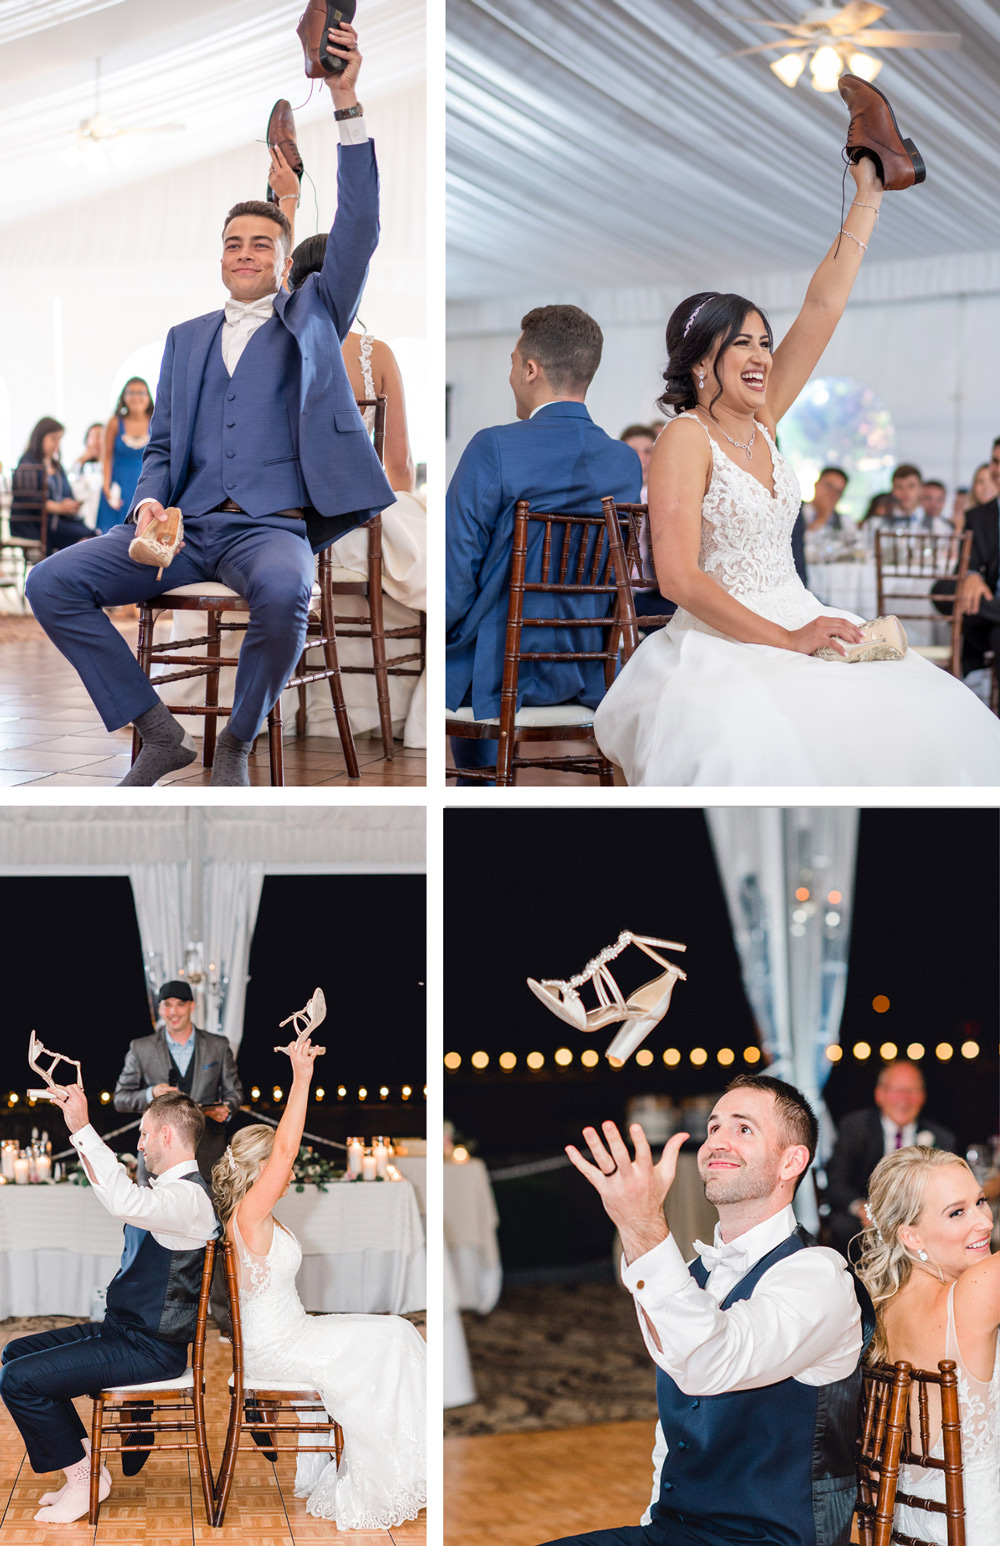 The Best Wedding Dance Floor Props to Get People on the Dance Floor 